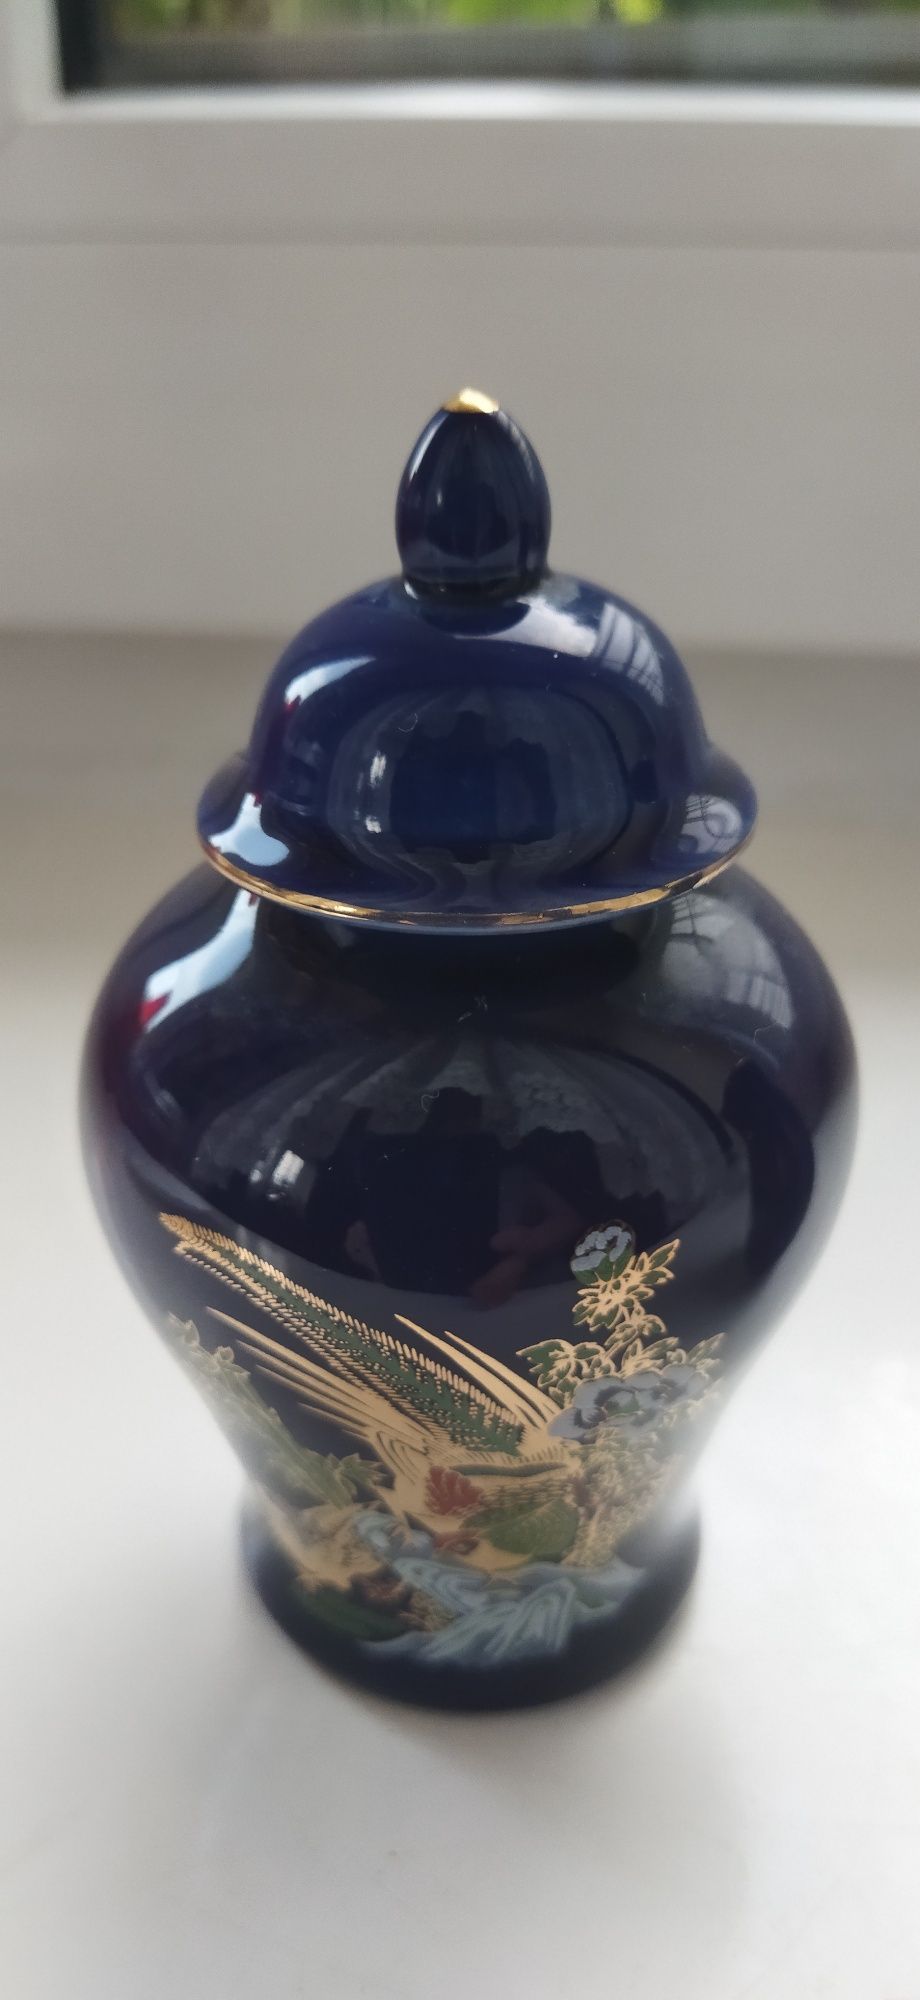 Japońska dekoracyjna mała urna i wazonik - porcelana, kobalt